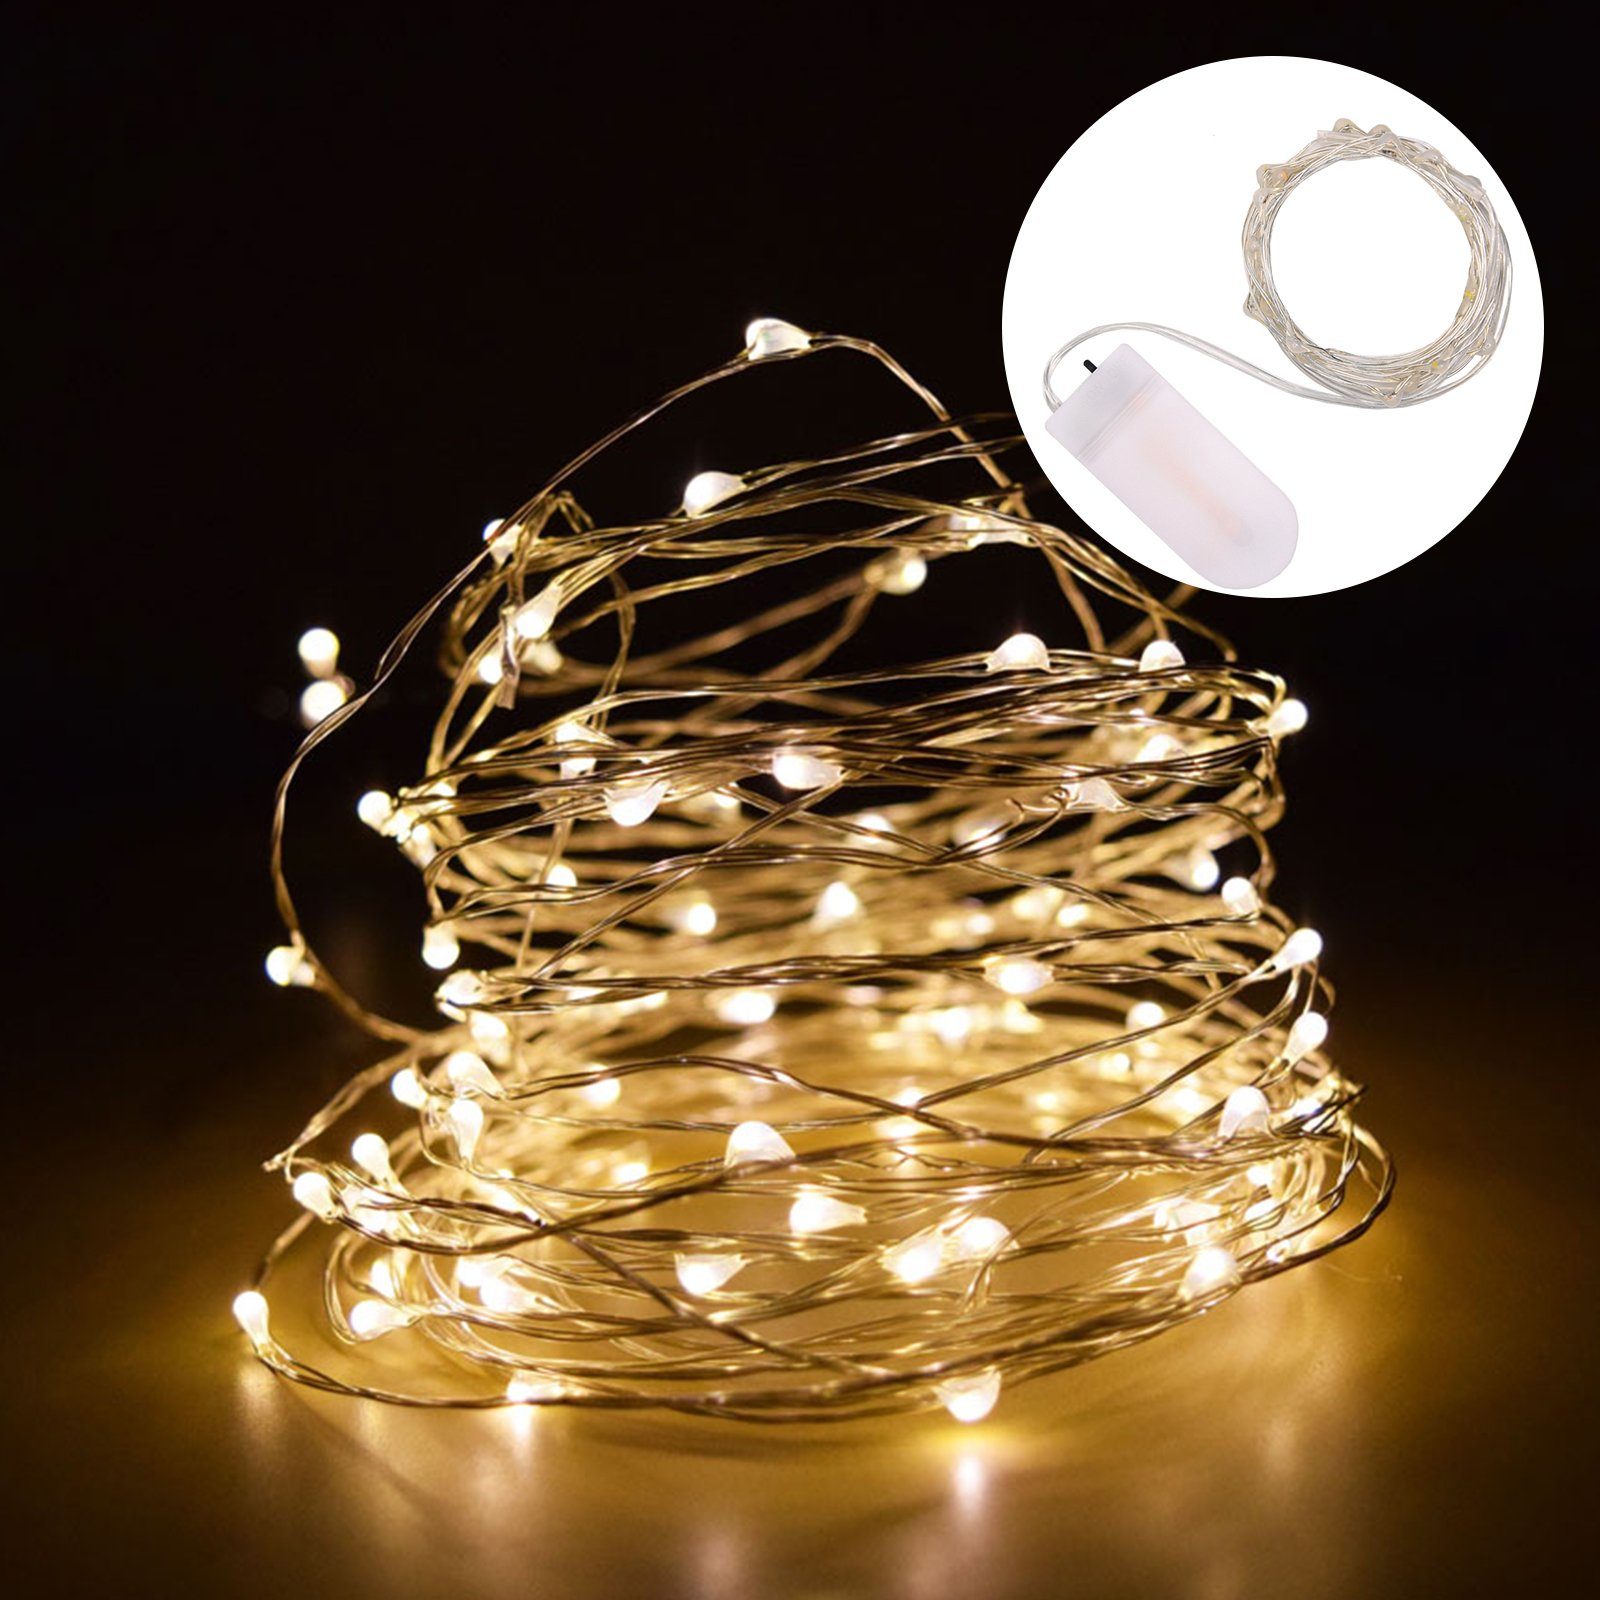 CALIYO LED Lichtleiste 10*2M Micro LED Lichterkette mit Batterie betrieb, LED fest integriert, Weiss, Gelb, RGB, für Party, Garten, Weihnachten, Halloween, Hochzeit, Beleuchtung Deko